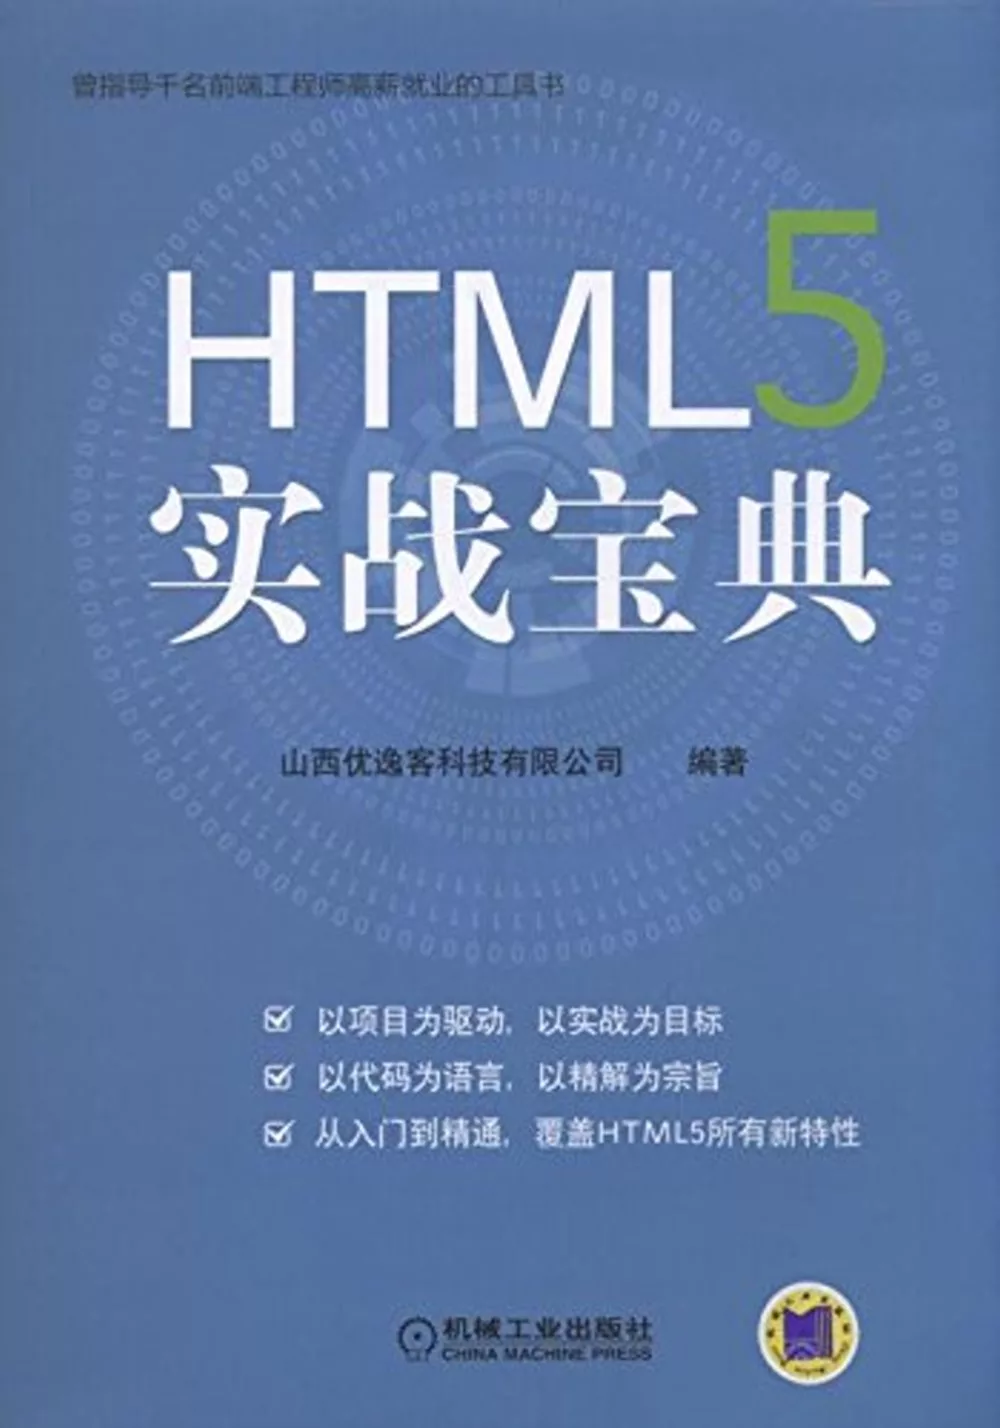 HTML5實戰寶典